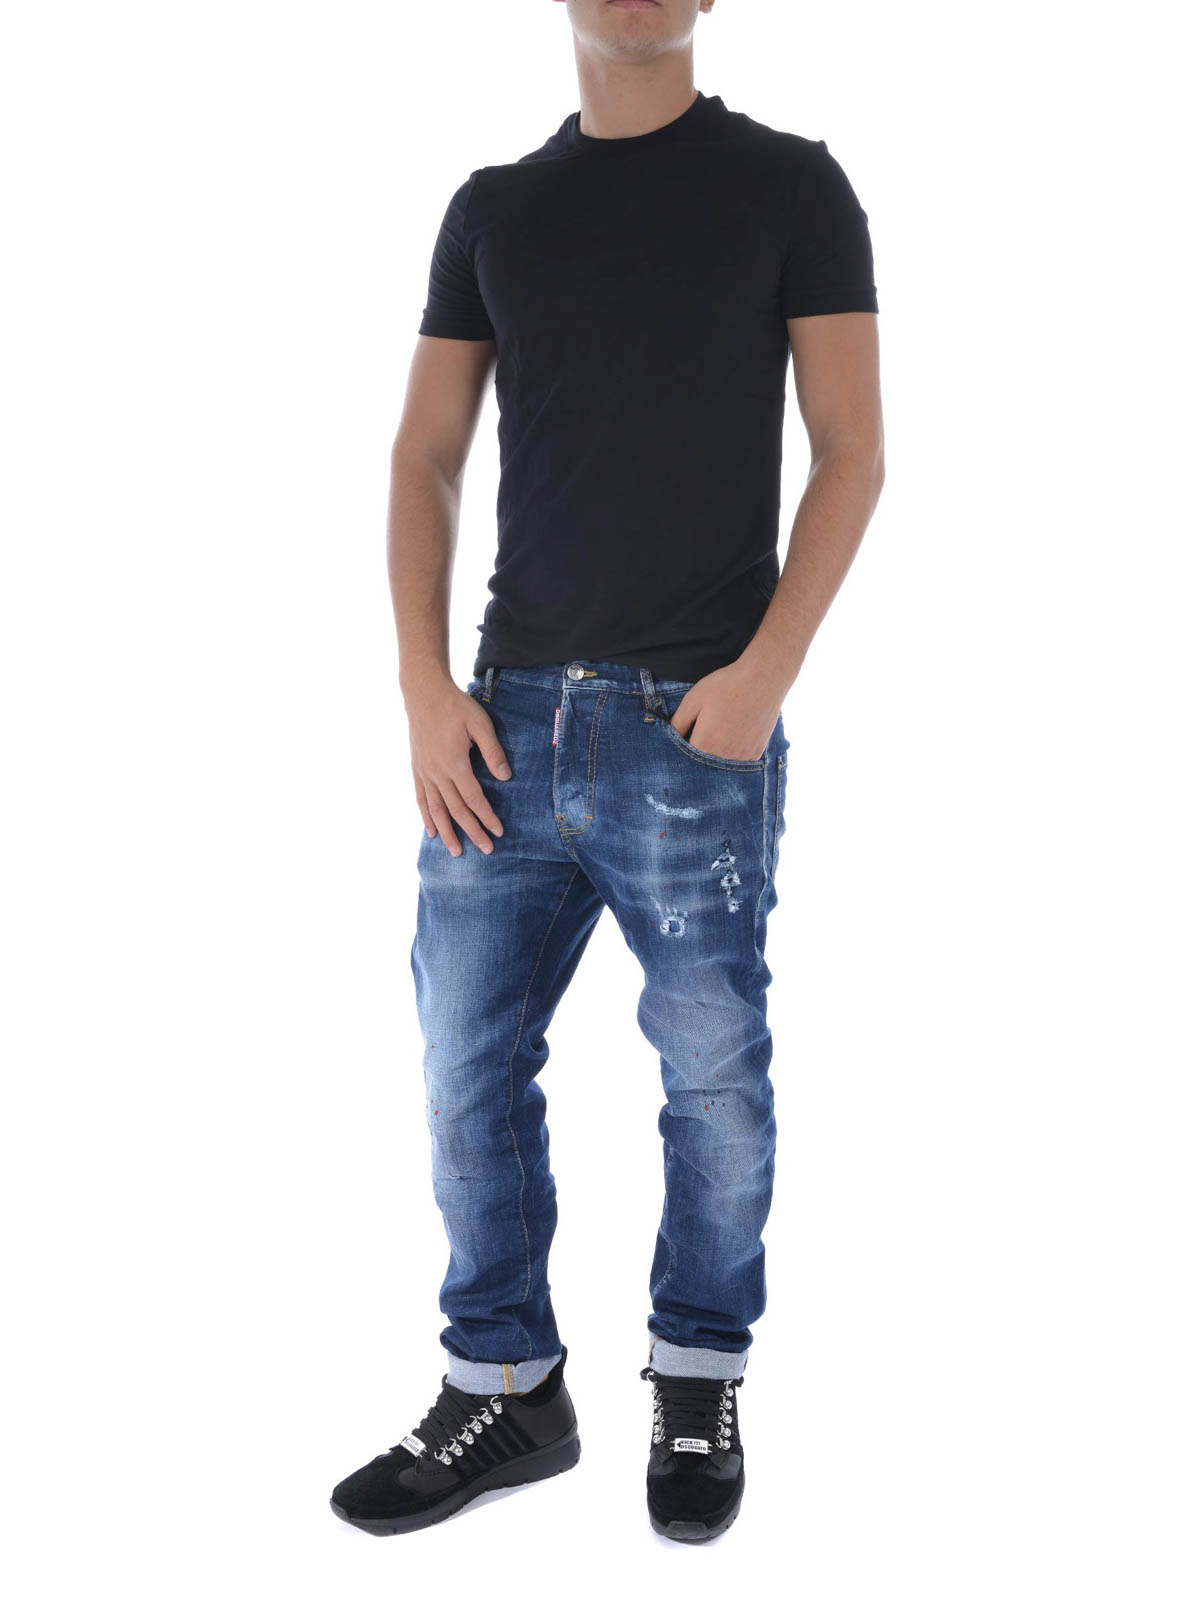 Mini von mair high waist boyfriend jeans damen bermuda shorts melbourne